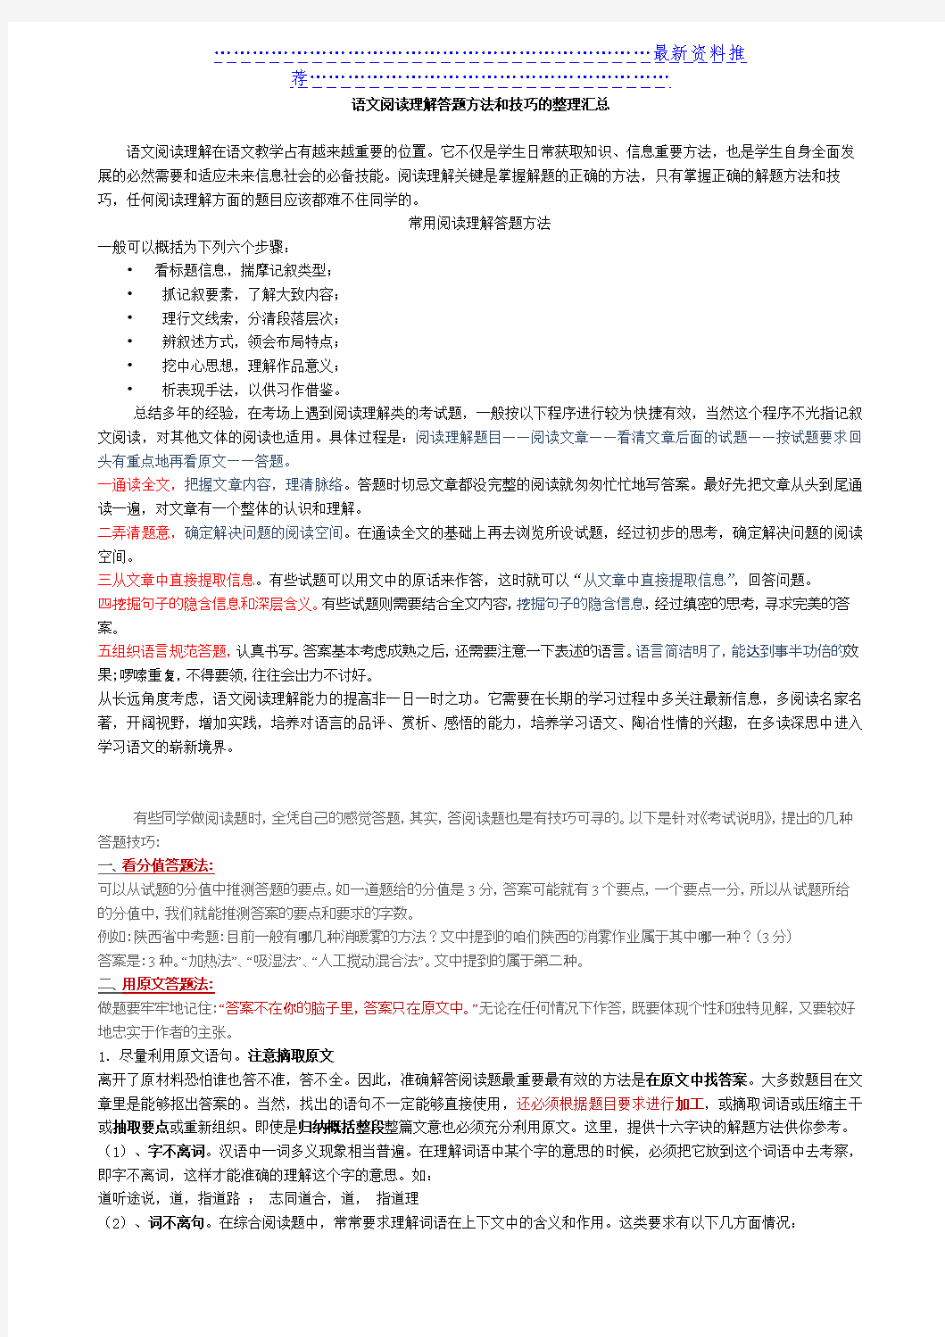 初中语文阅读理解答题技巧的整理汇总